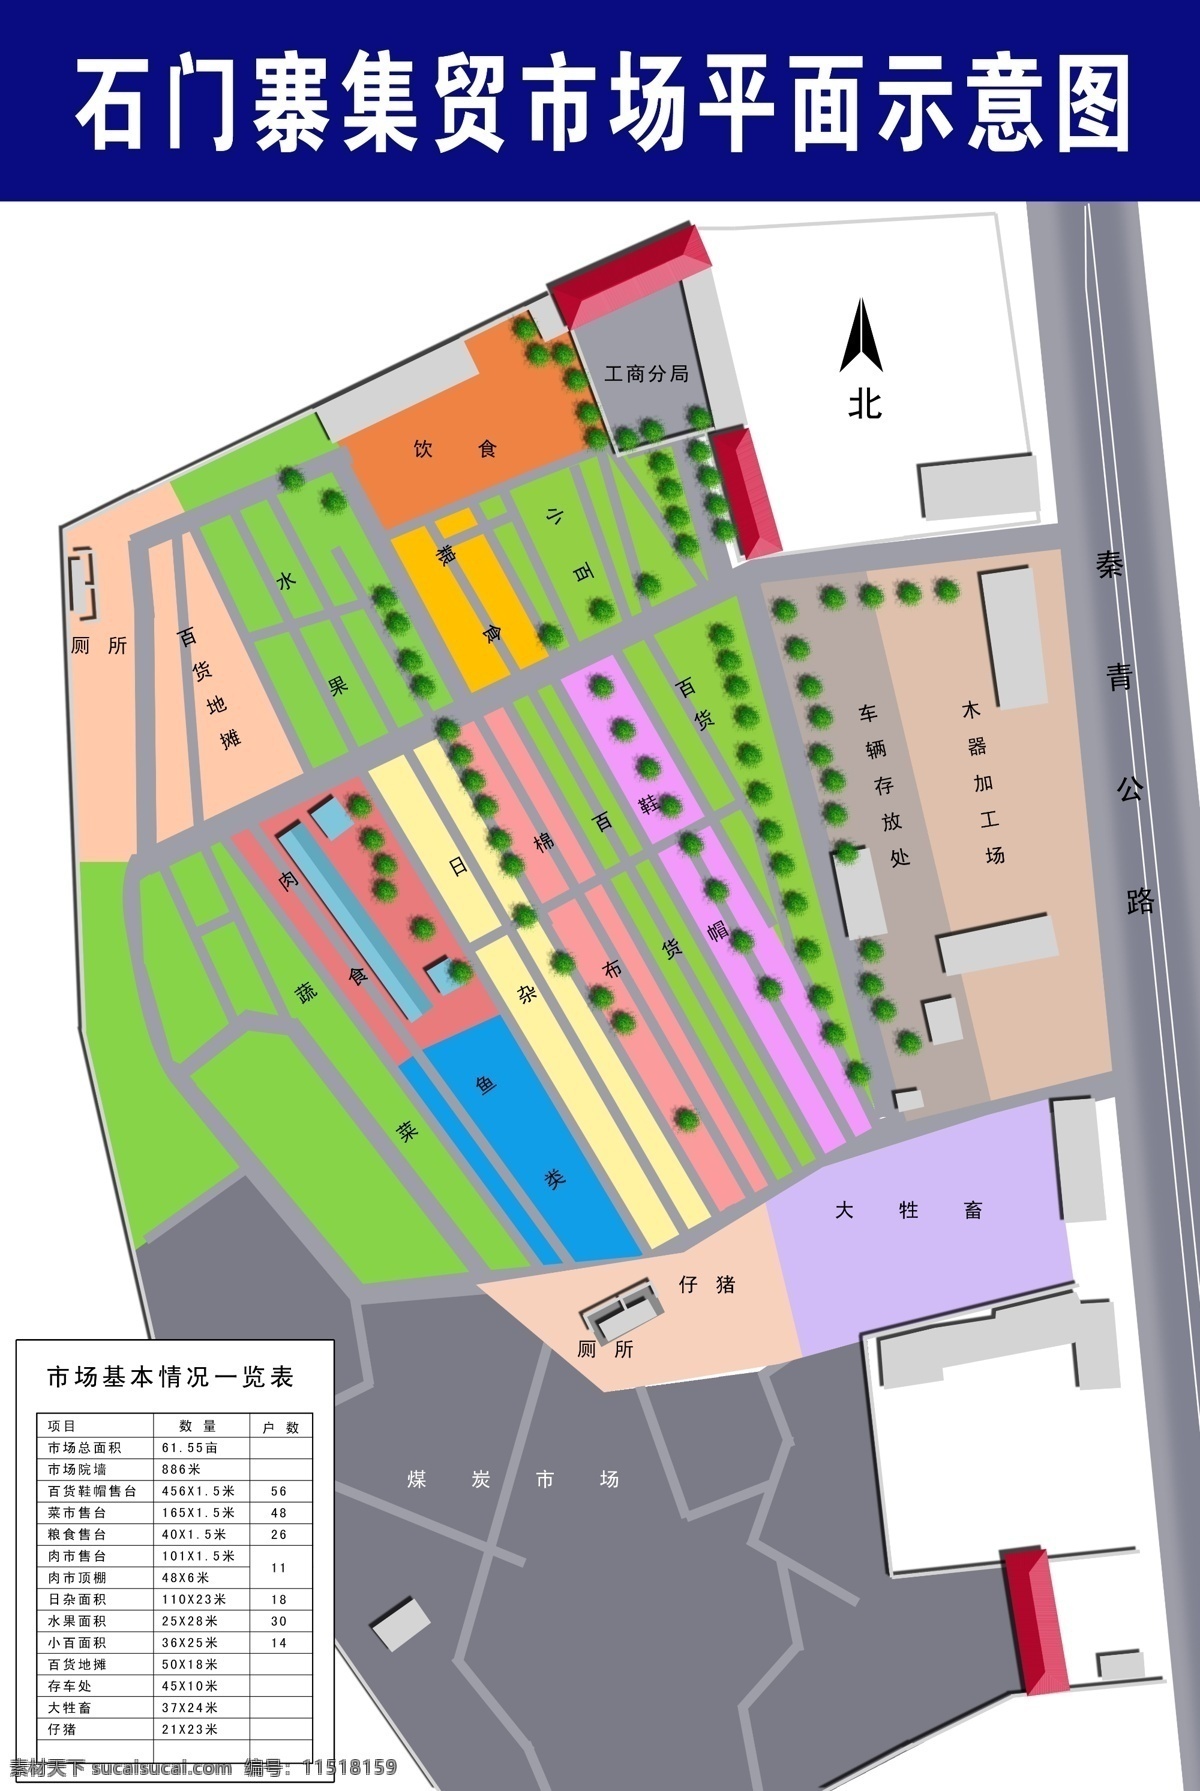 分层 公路 绿化带 源文件 抚宁县 石门 寨 市场 平面 示意图 模板下载 推位位置 家居装饰素材 园林景观设计